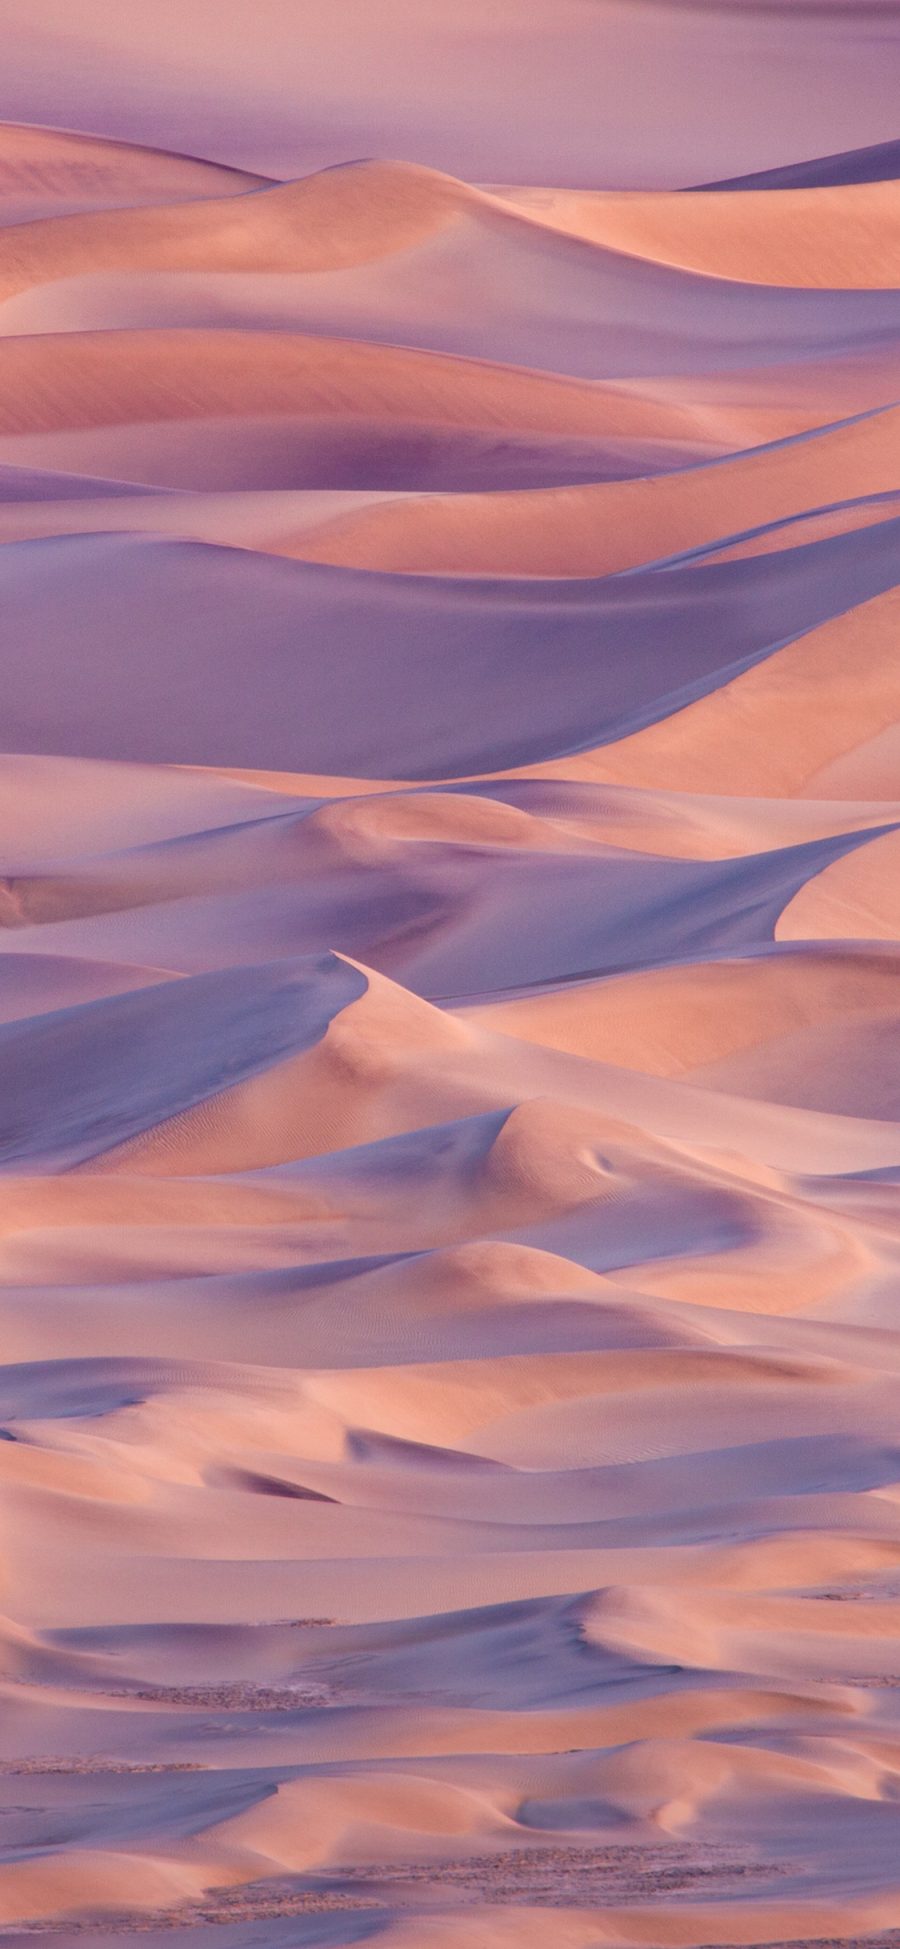 [2436×1125]沙漠 大自然 荒漠 曲线 光影 苹果手机壁纸图片